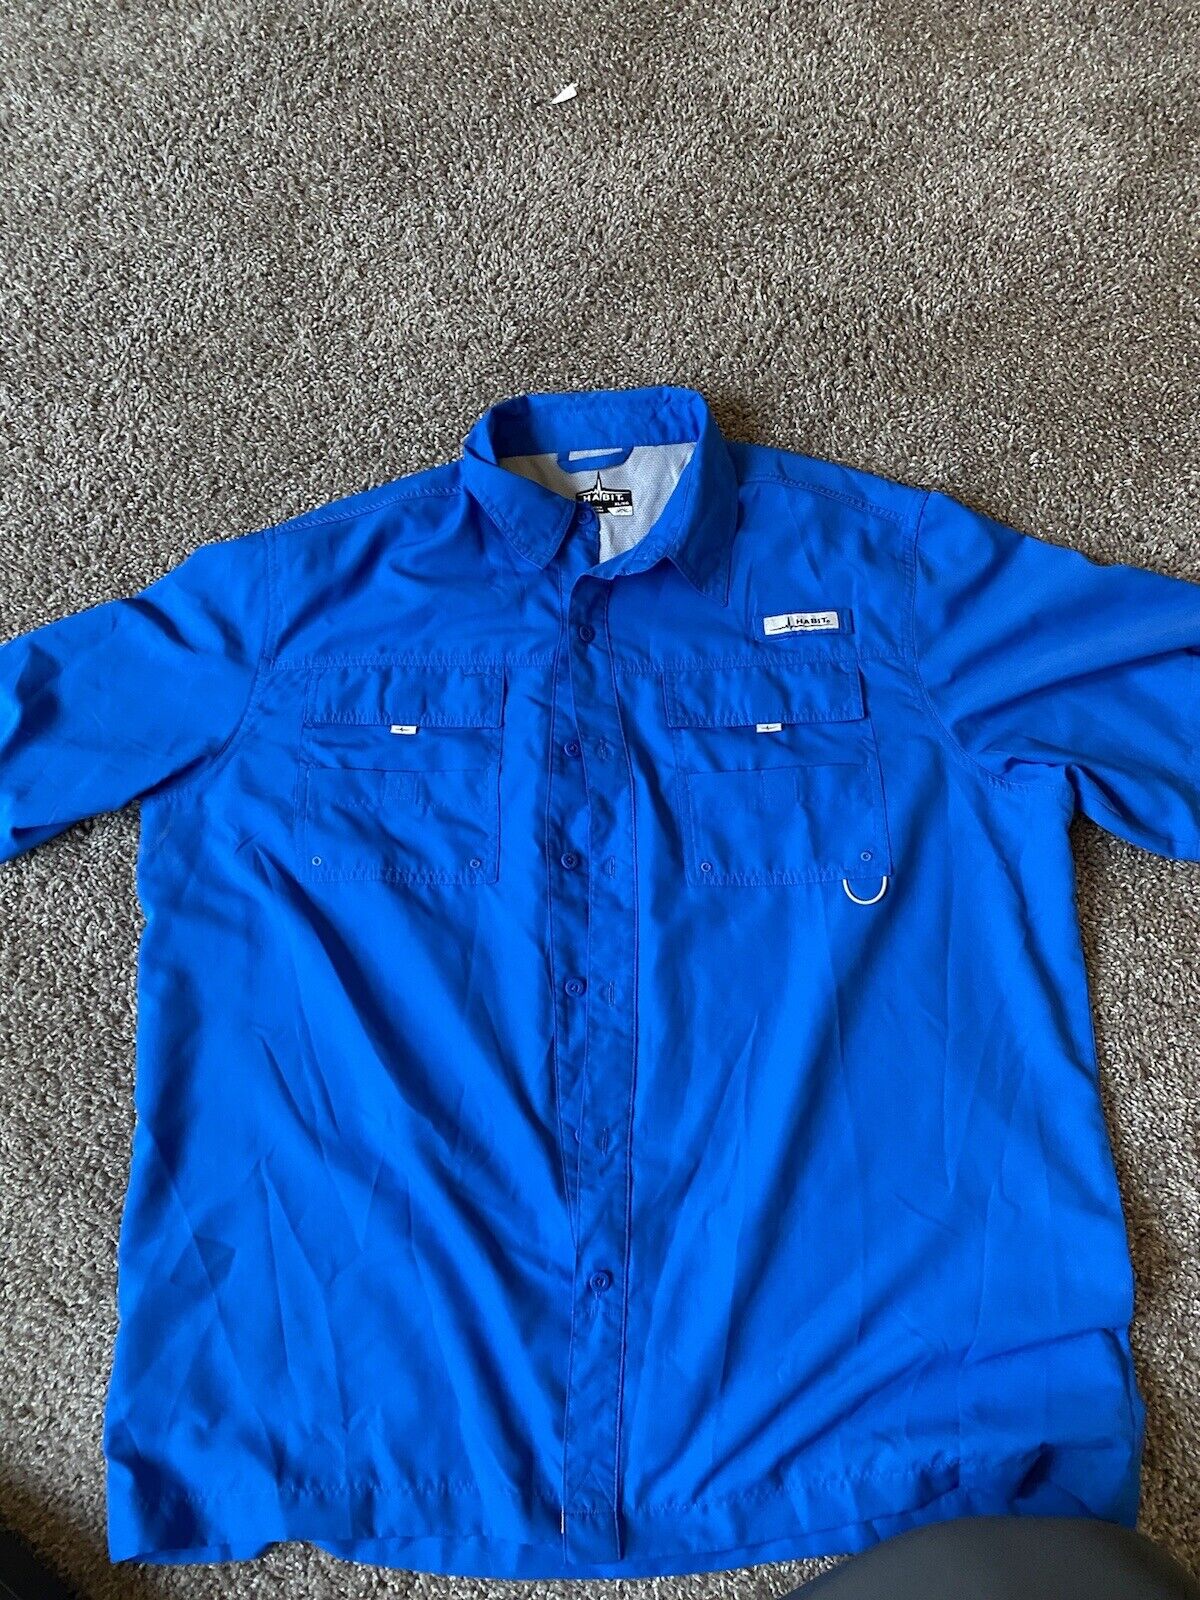 Habit UPF40+ Short Sleeve Men’s Blue Shirt Size XL Outdoor Fishing Fisherman